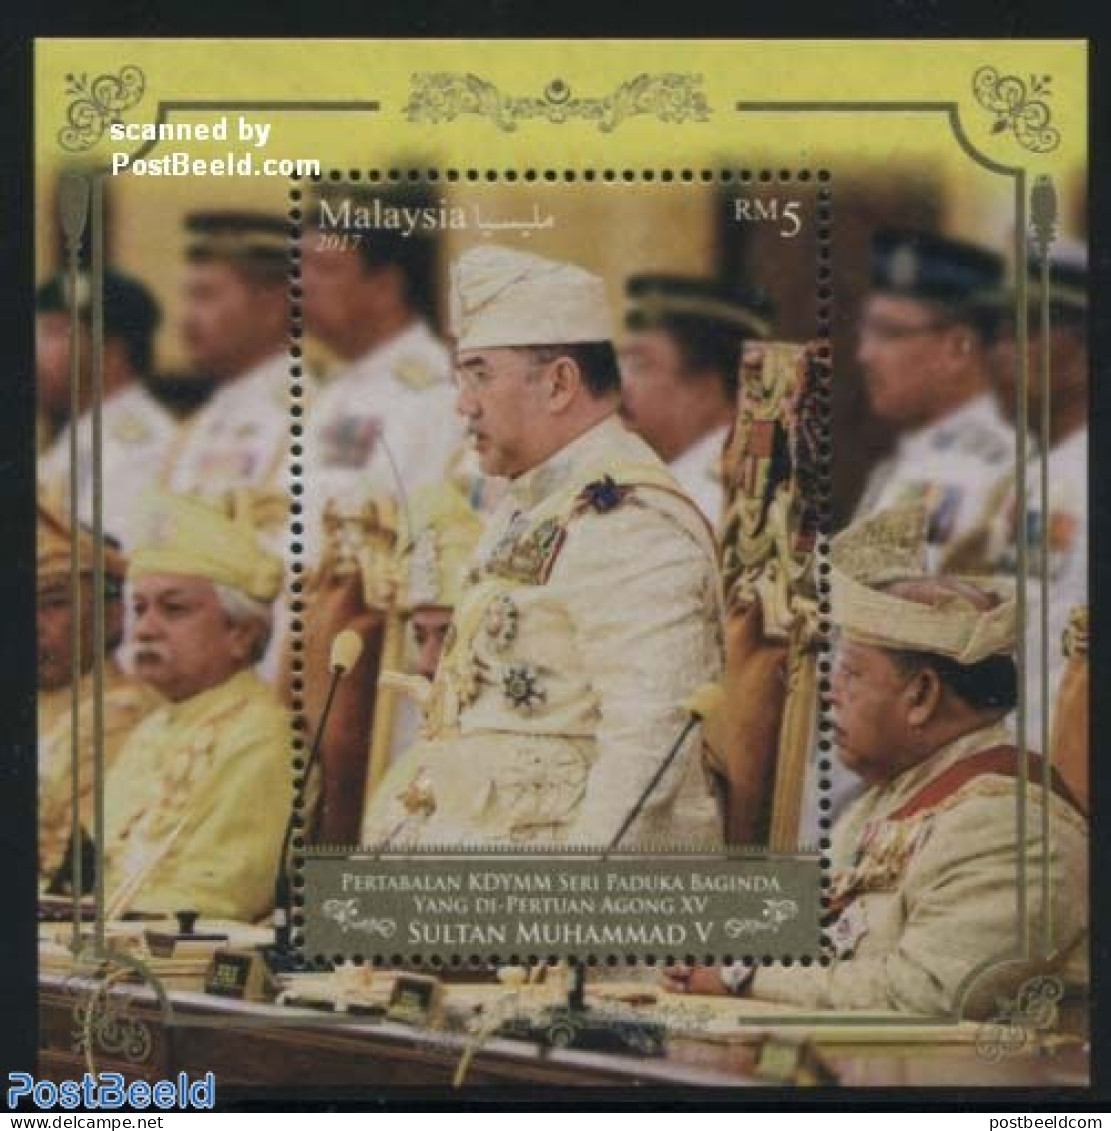 Malaysia 2017 15th Yang Di-Pertuan Agong S/s, Mint NH, History - Kings & Queens (Royalty) - Royalties, Royals